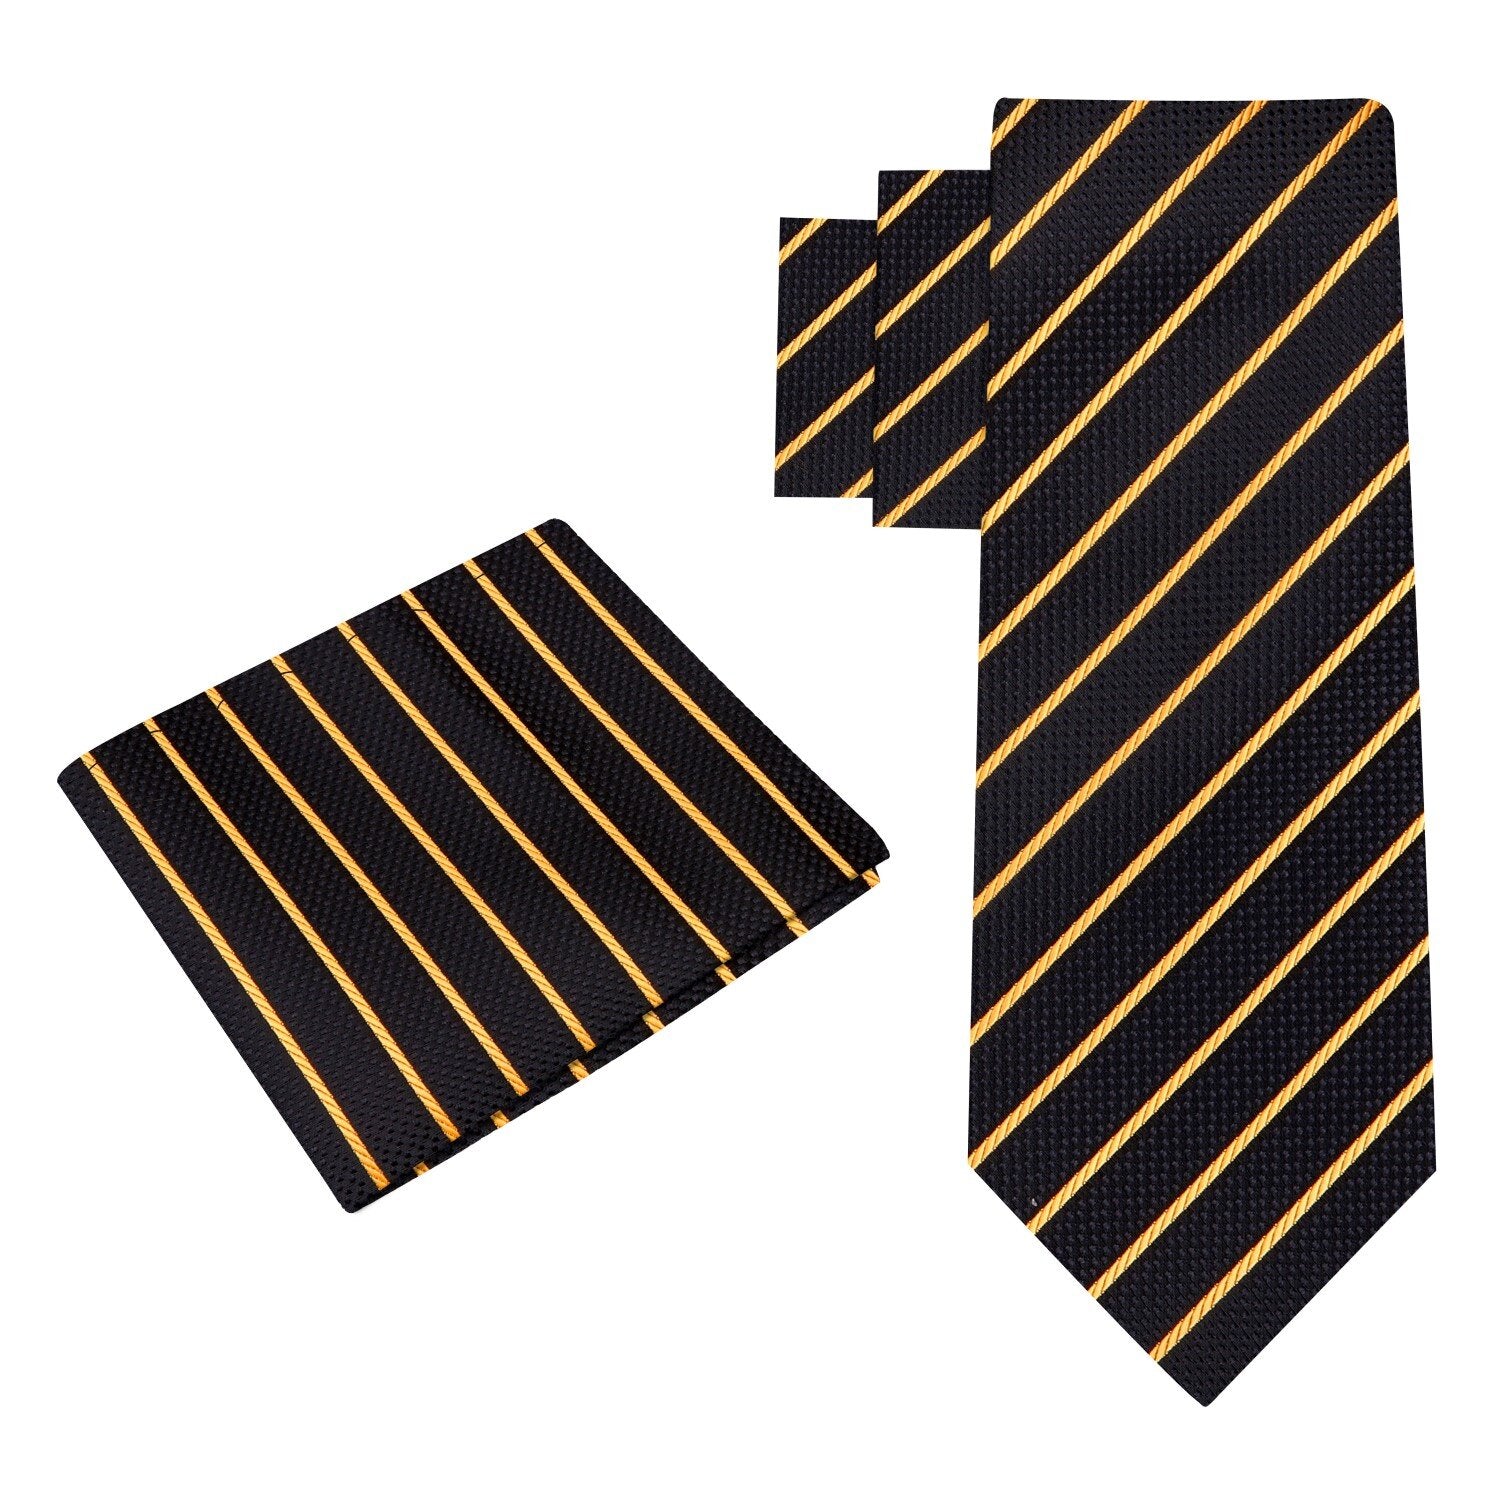 Alt View: A Black, Gold Stripe Pattern Silk Necktie, Matching Pocket Square